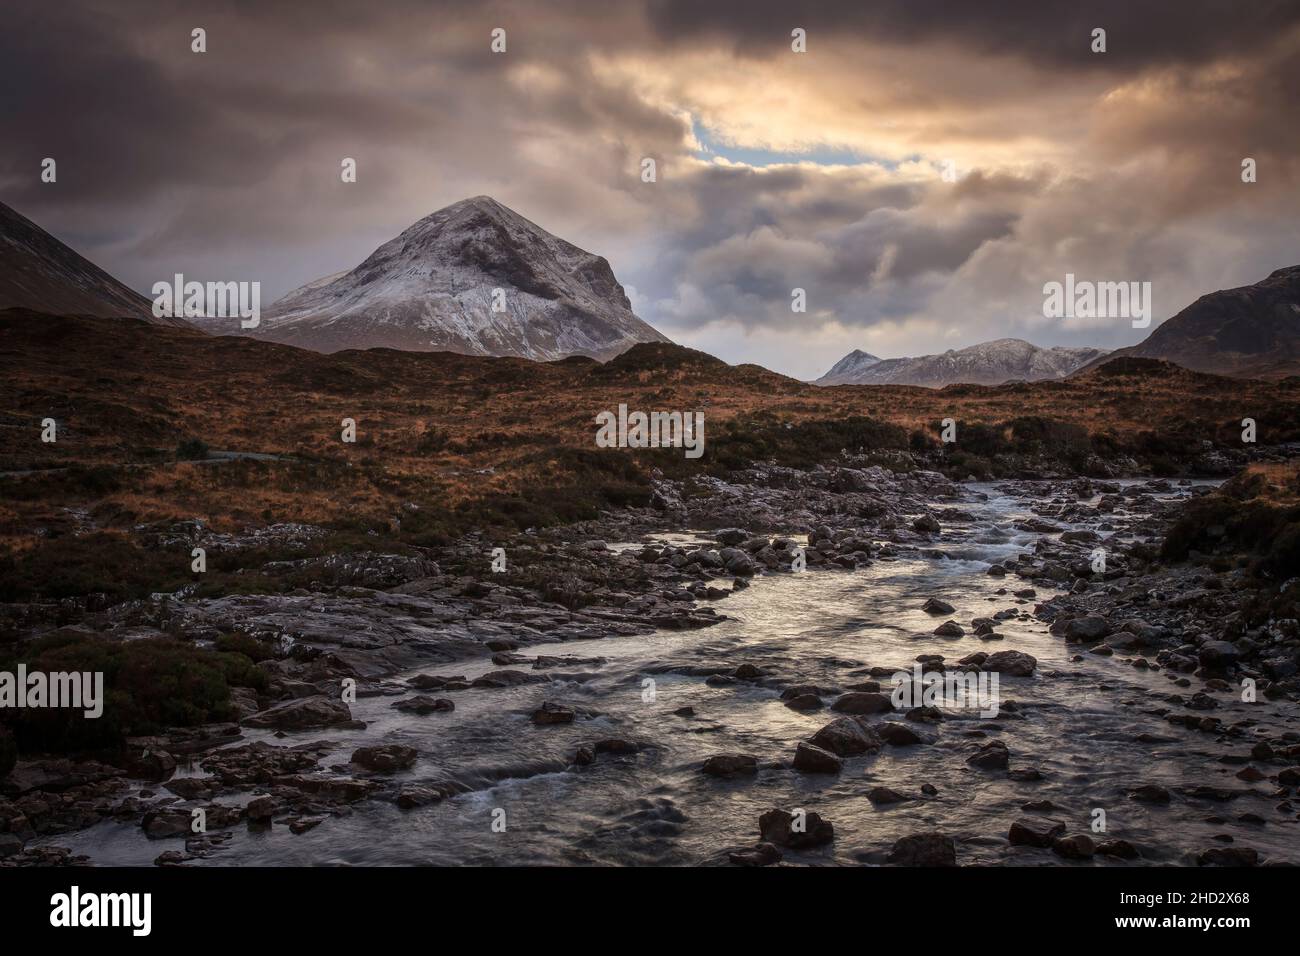 En hiver Glen Sigachan avec le pic de Marsco dans la distance sur l'île de Skye dans les Hébrides intérieures de l'Écosse Banque D'Images